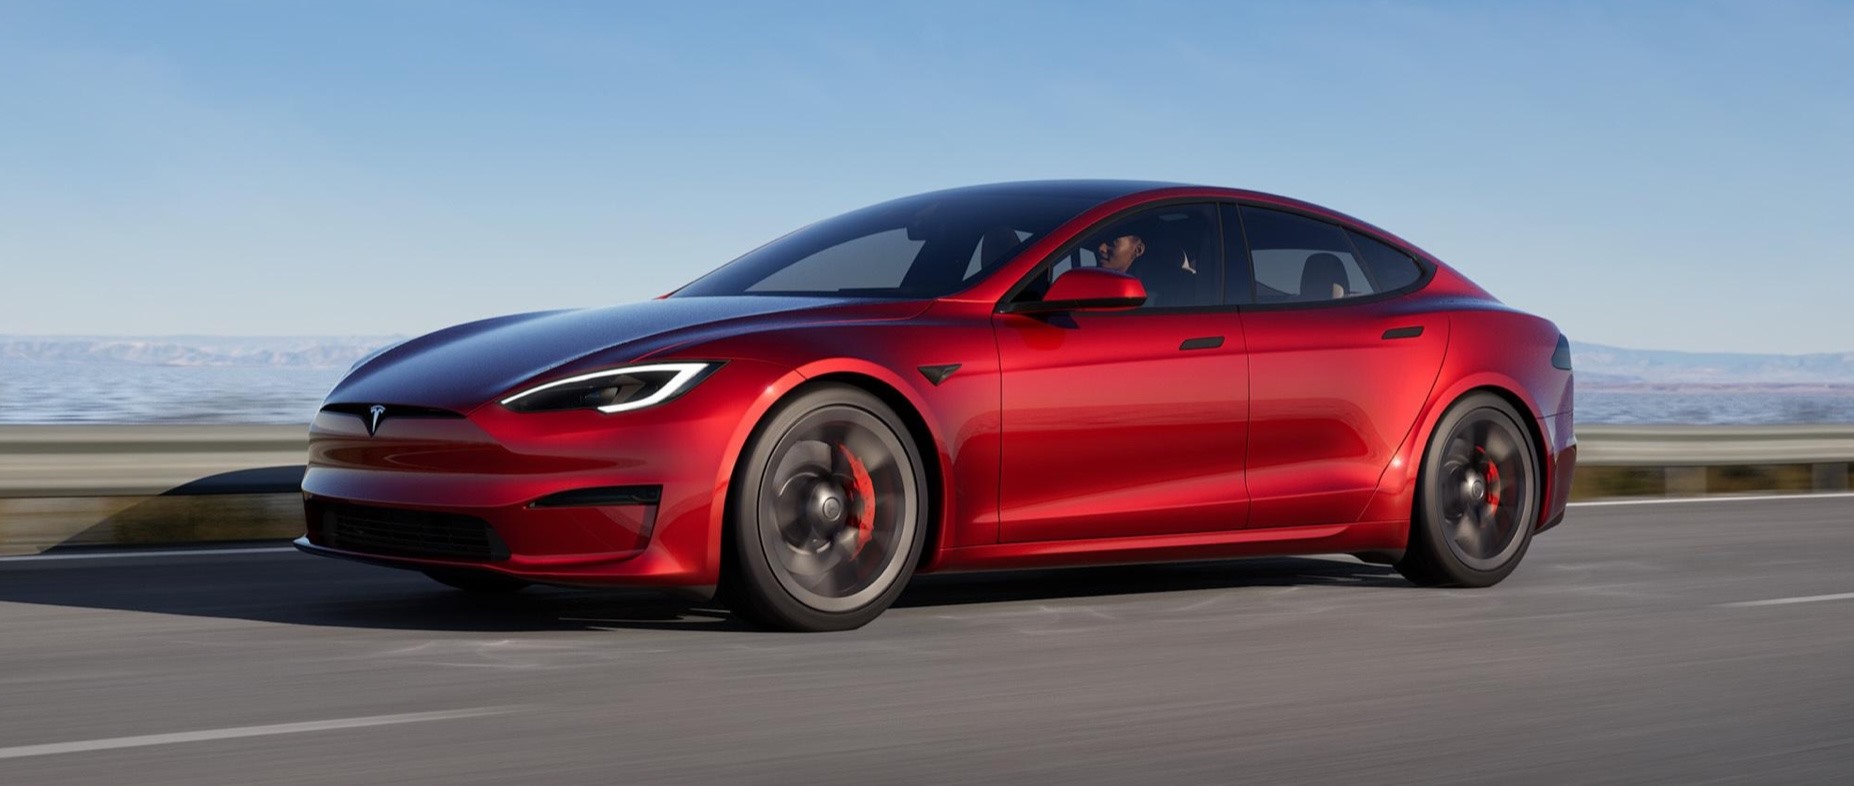 Tesla thu thập dữ liệu từ hàng triệu xe của mình để phát triển công nghệ xe tự lái, với sự đồng ý của chủ sở hữu xe. Ảnh: Tesla